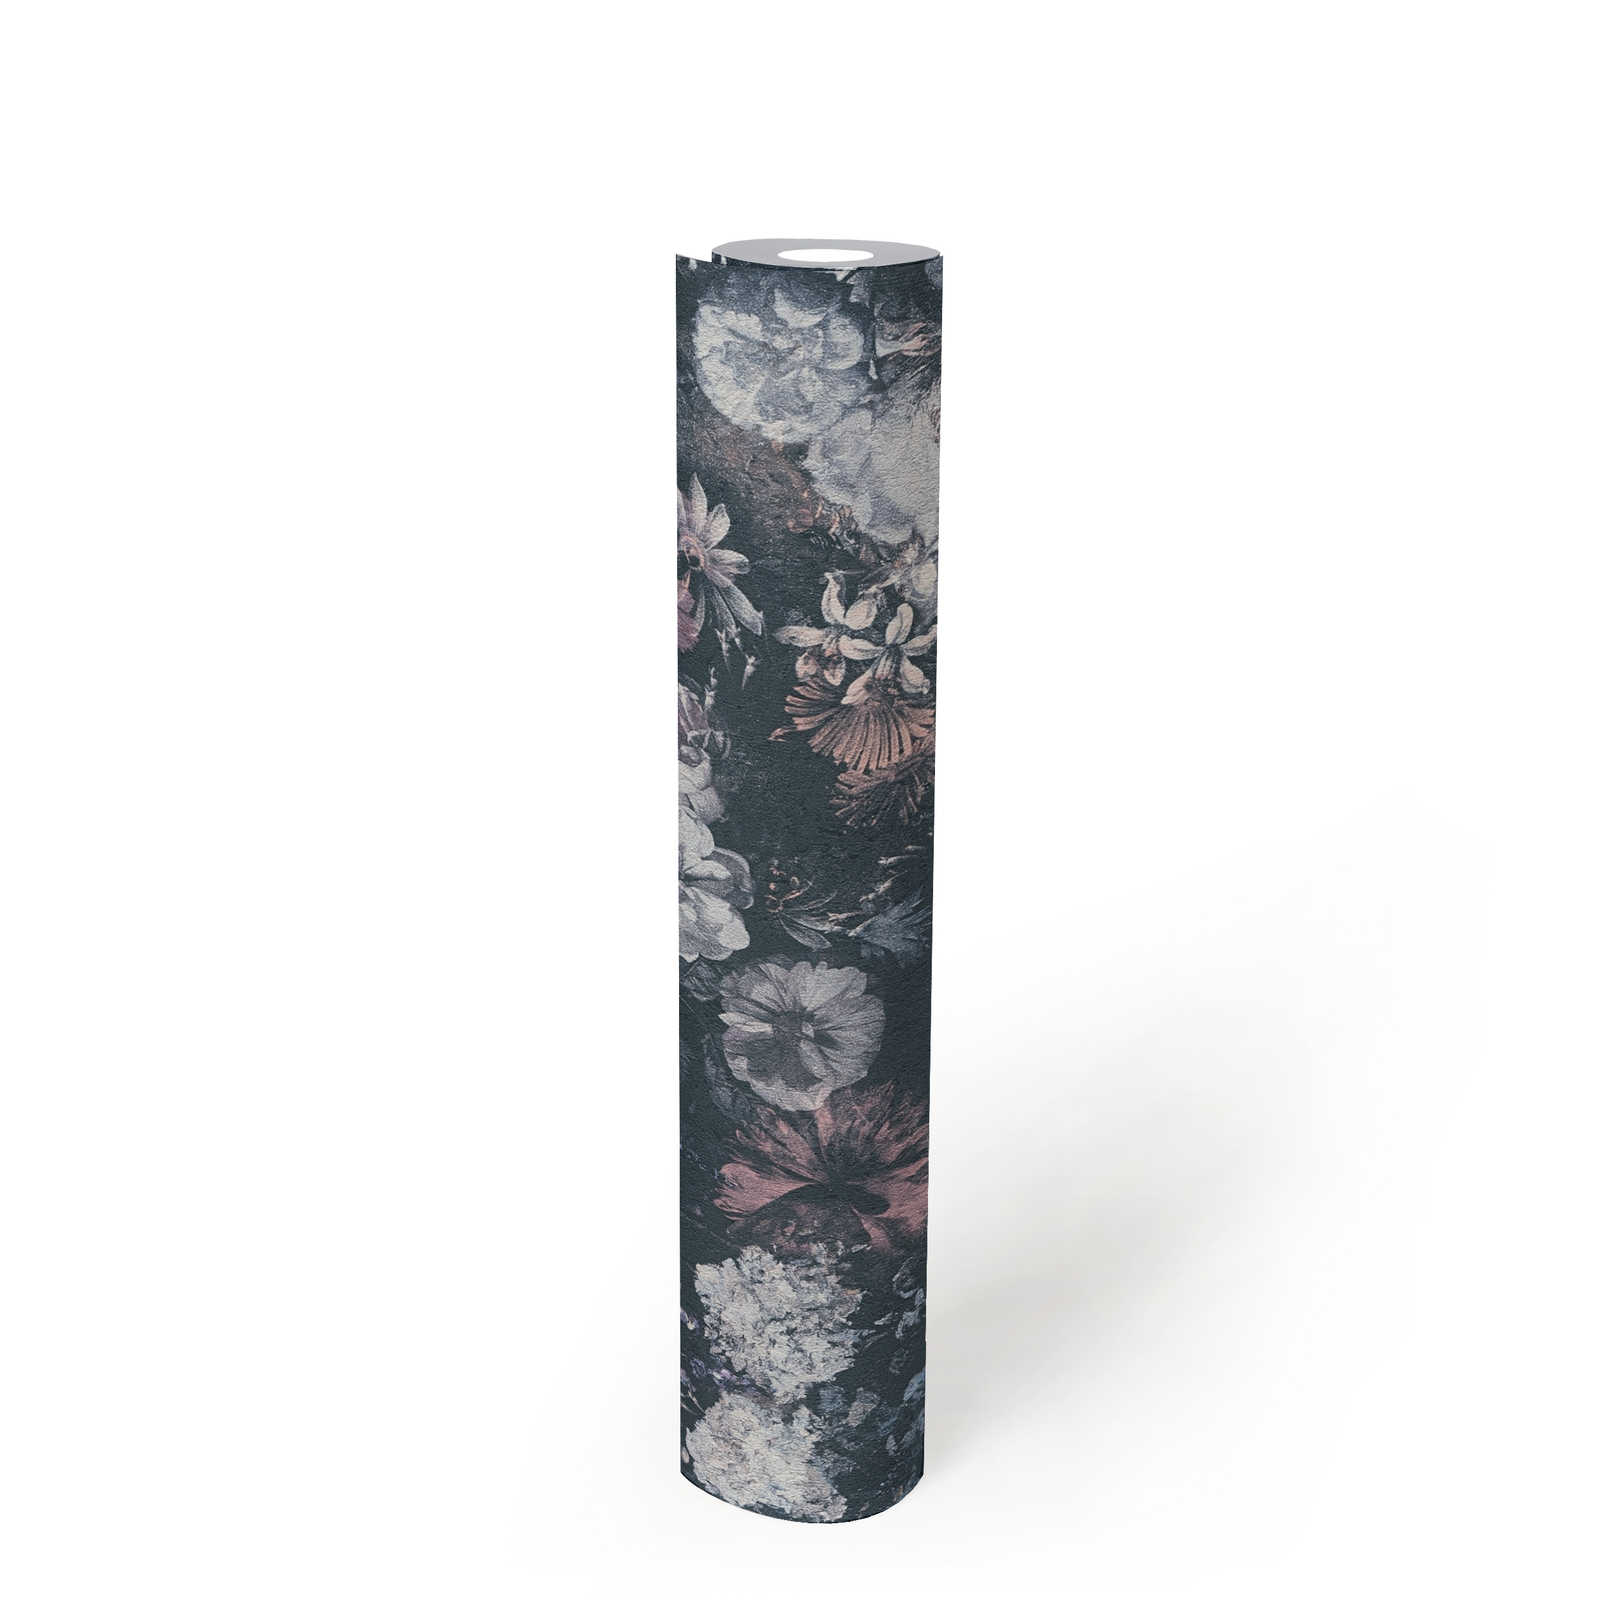             Blumentapete Rosen Gemälde mit Textureffekt – Grau, Rosa
        